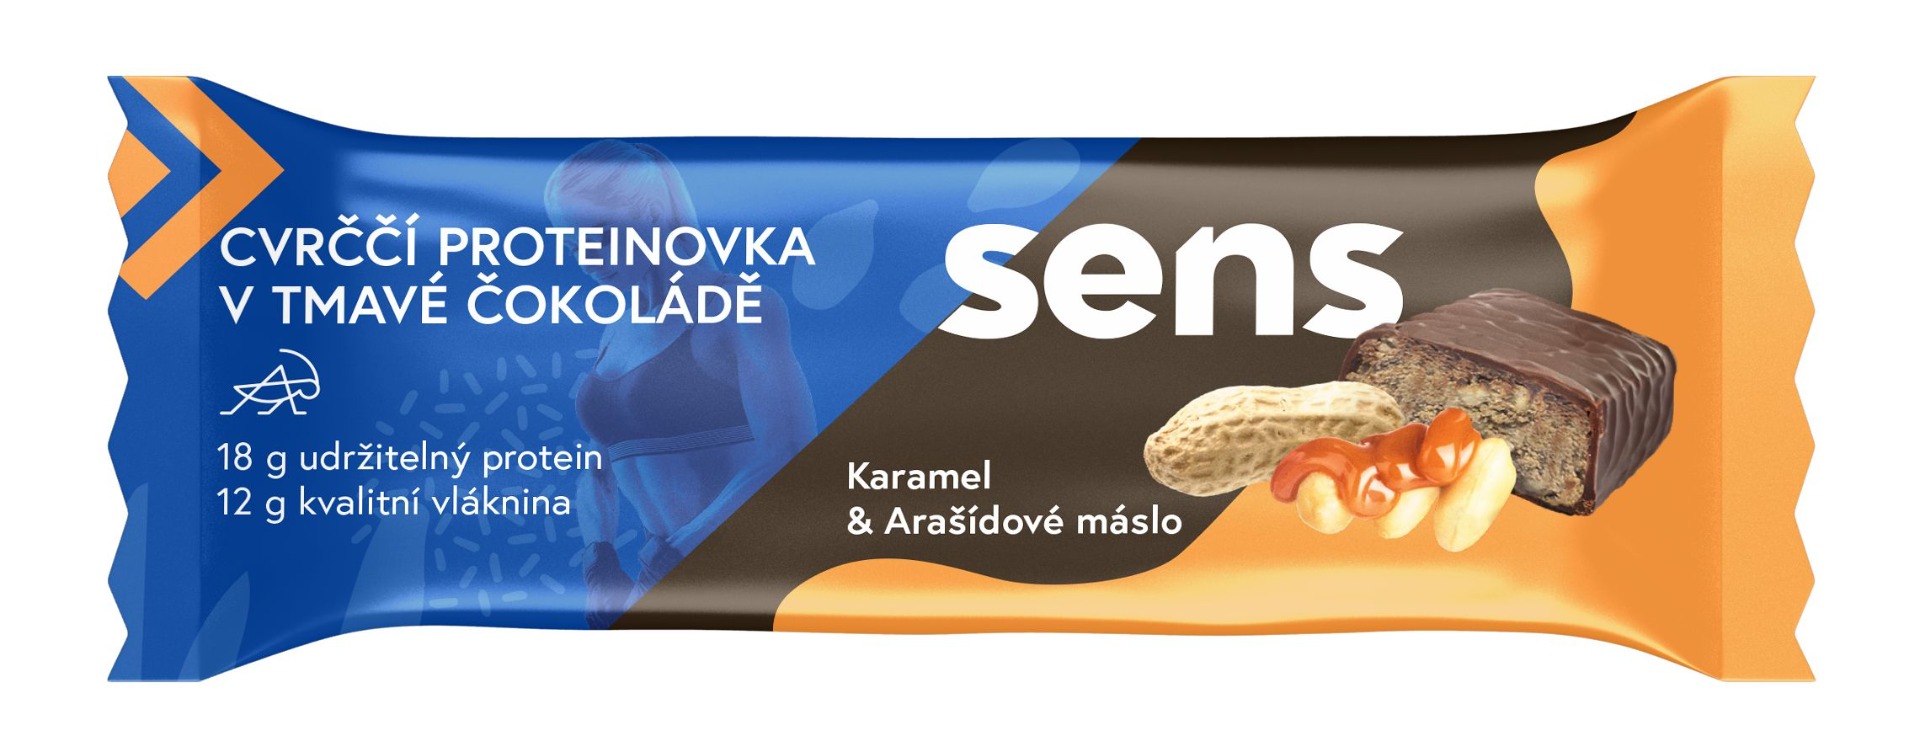 SENS Cvrččí proteinovka v tmavé čokoládě Karamel & Arašídové máslo 60 g SENS